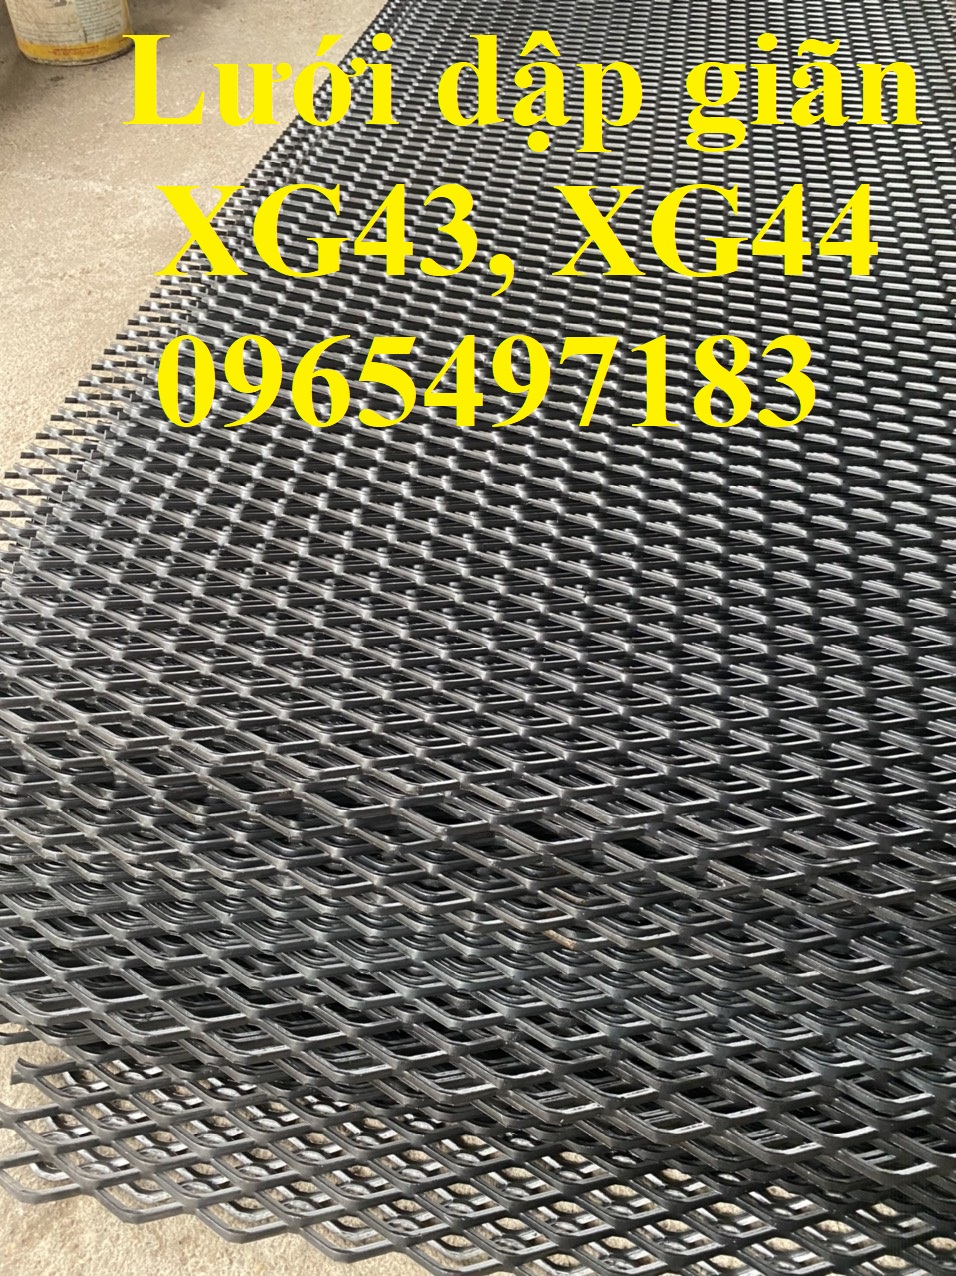 Lưới dập giãn XG19, XG20, XG21, XG42, XG43 có sẵn tại Hà Nội